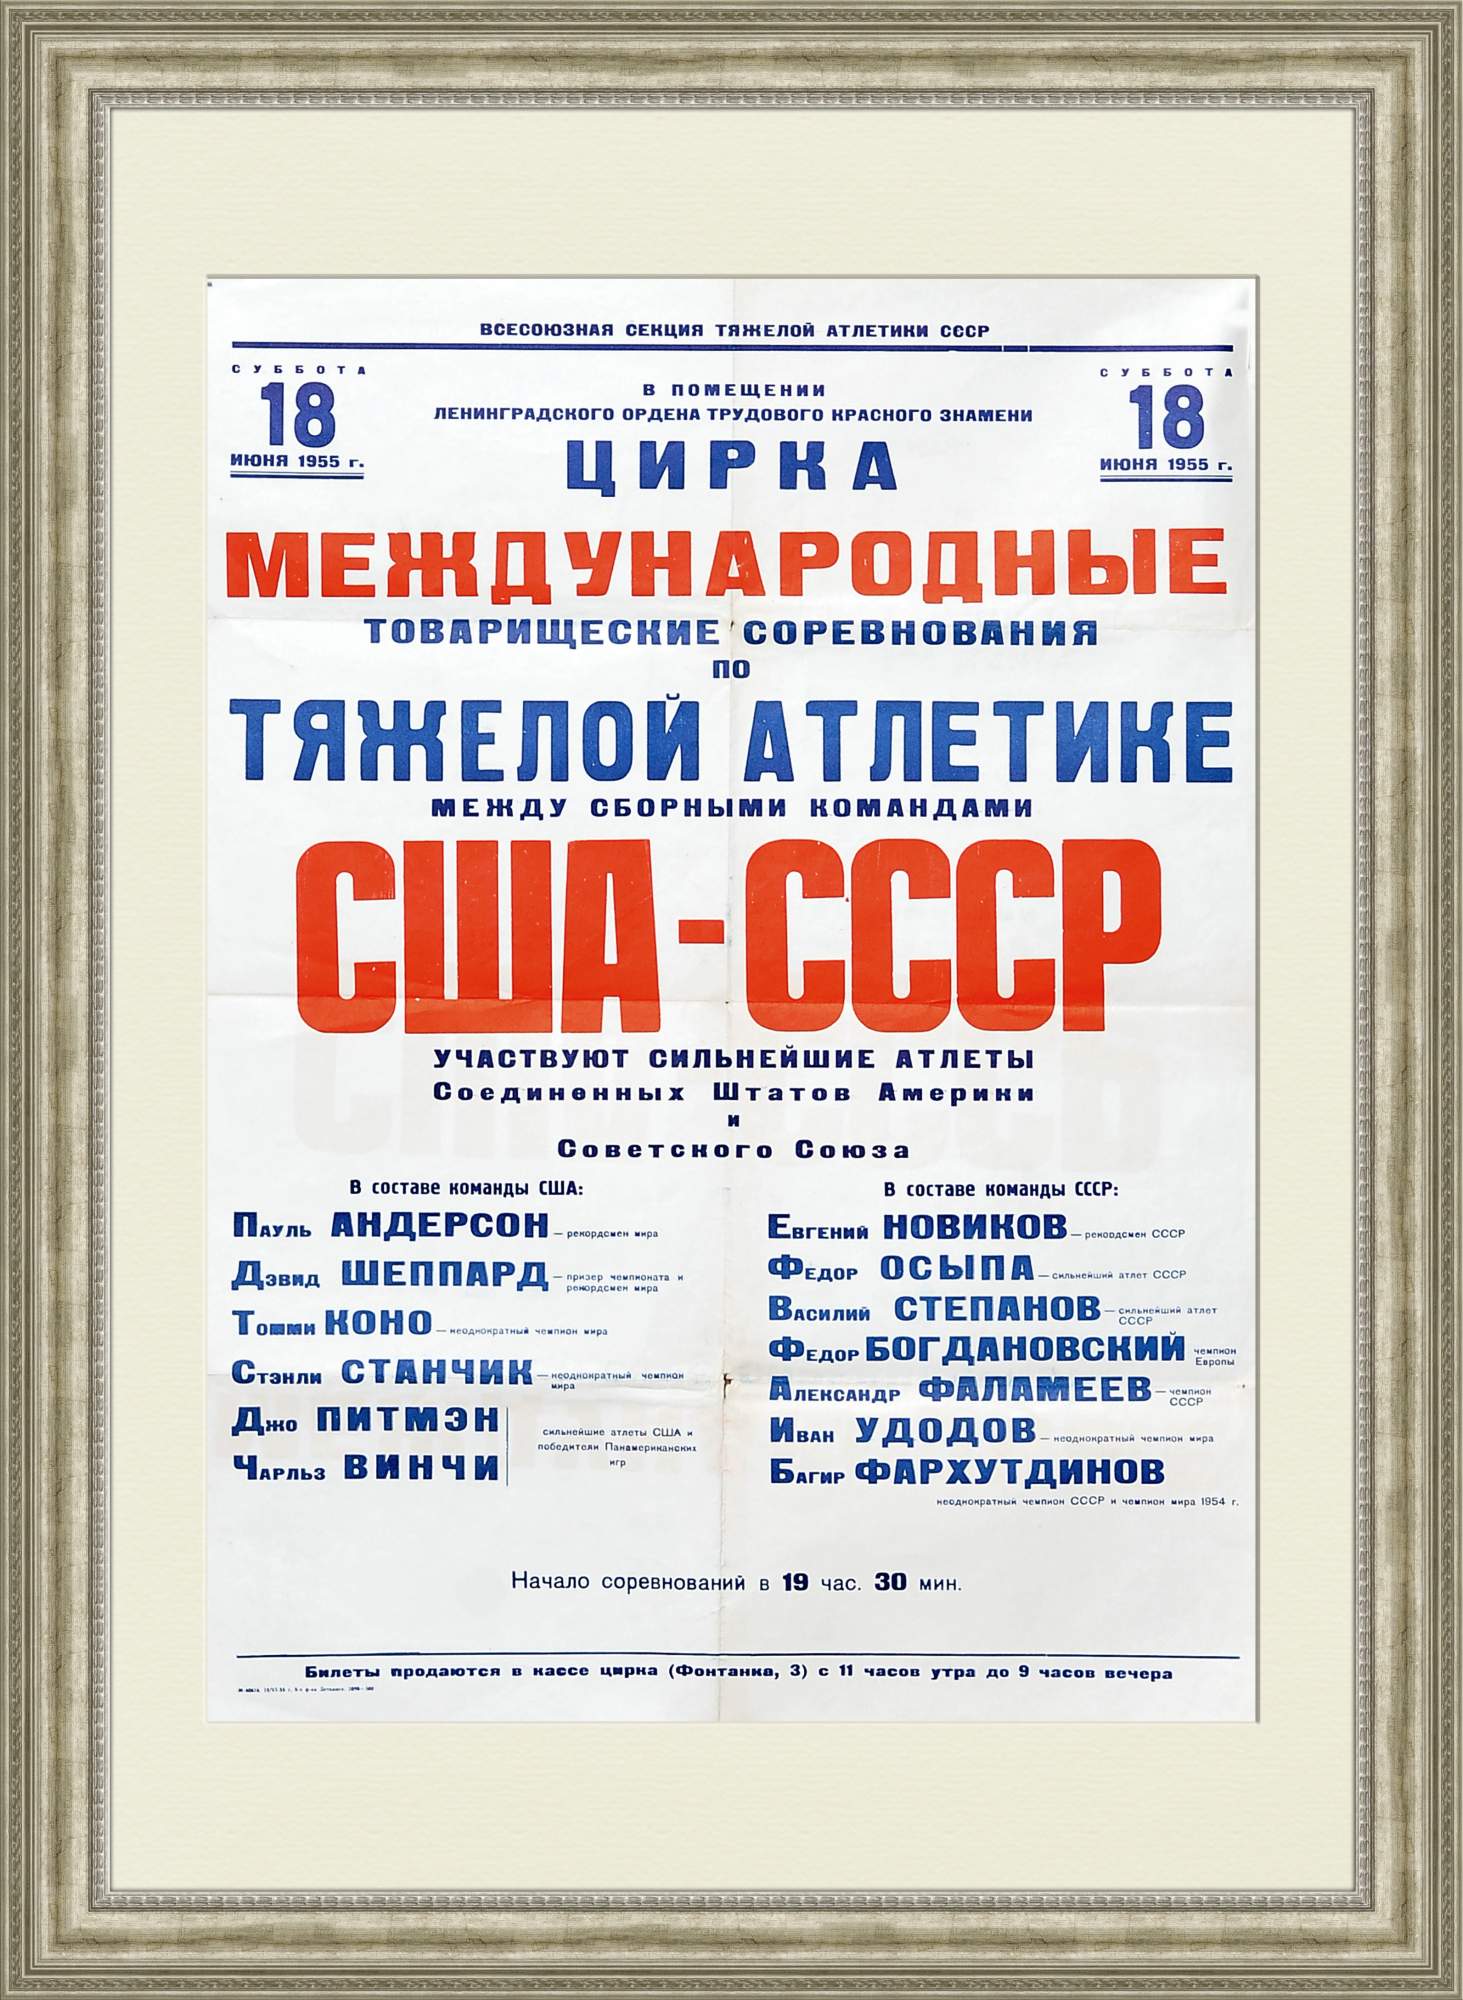 США-СССР соревнования 1955 года по тяжелой атлетике, большая афиша